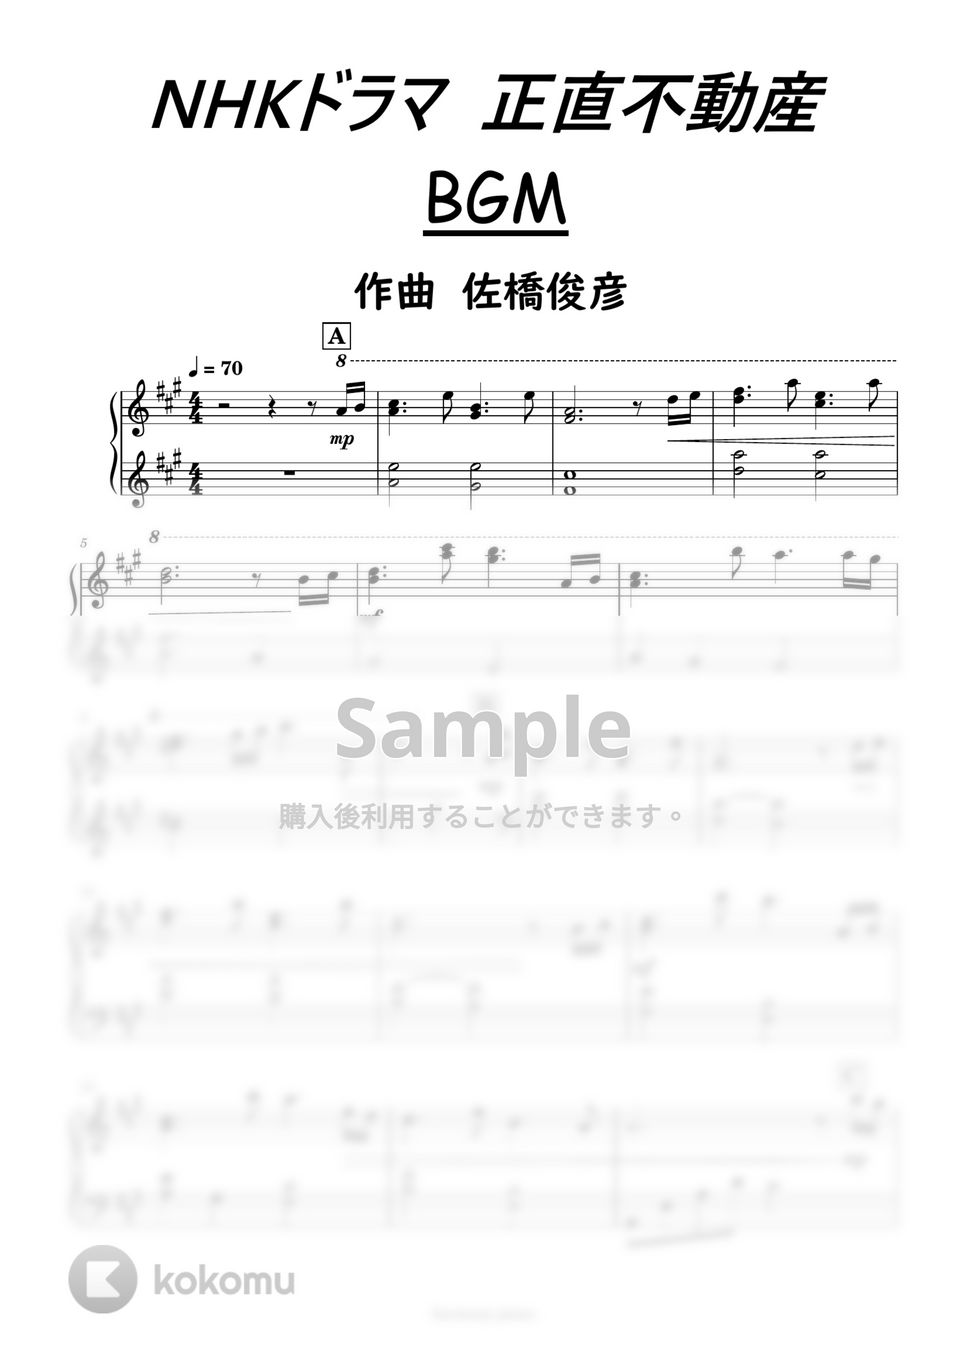 山下智久主演NHKドラマ正直不動産 - 正直不動産BGM by harmony piano